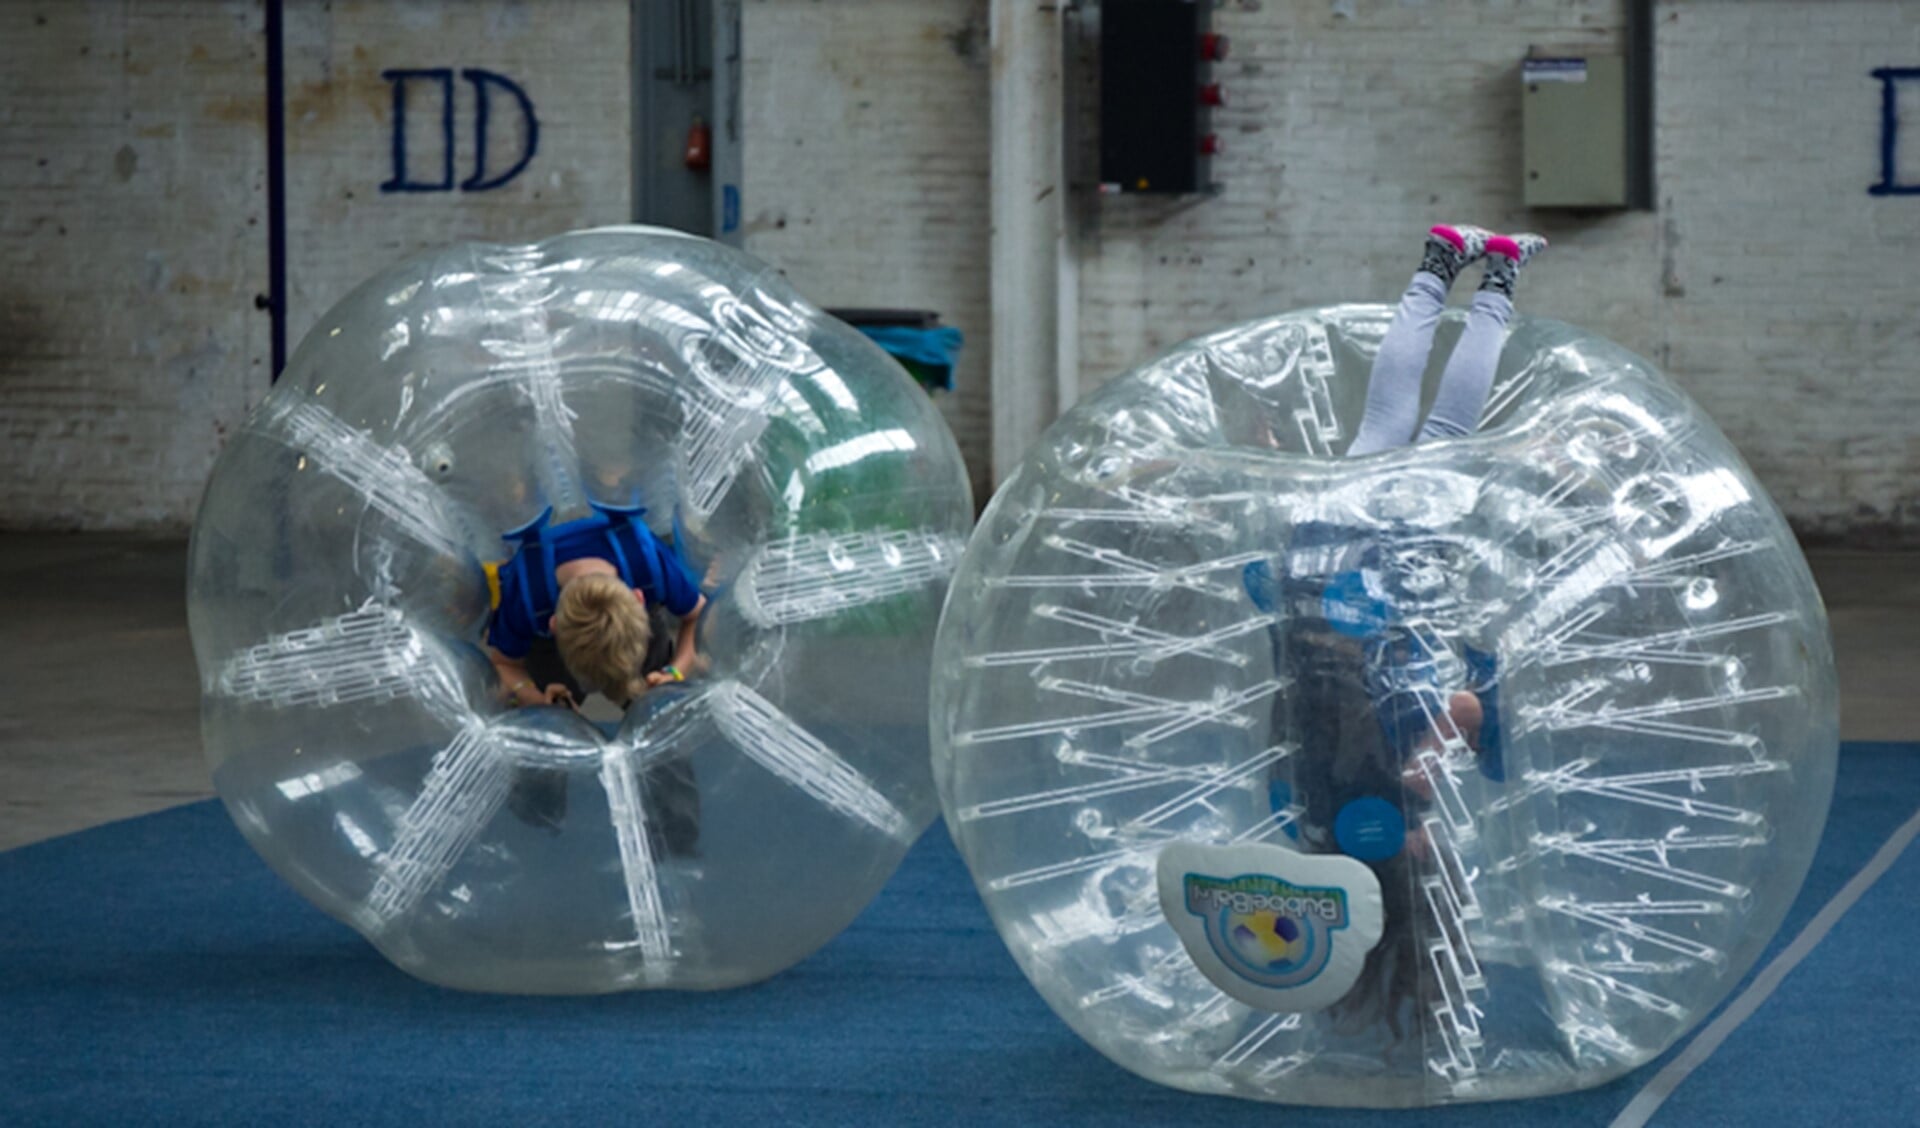 De Bubbelbal is een van de vele speelmogelijkheden bij Kidsfabriek. Foto: PR, 